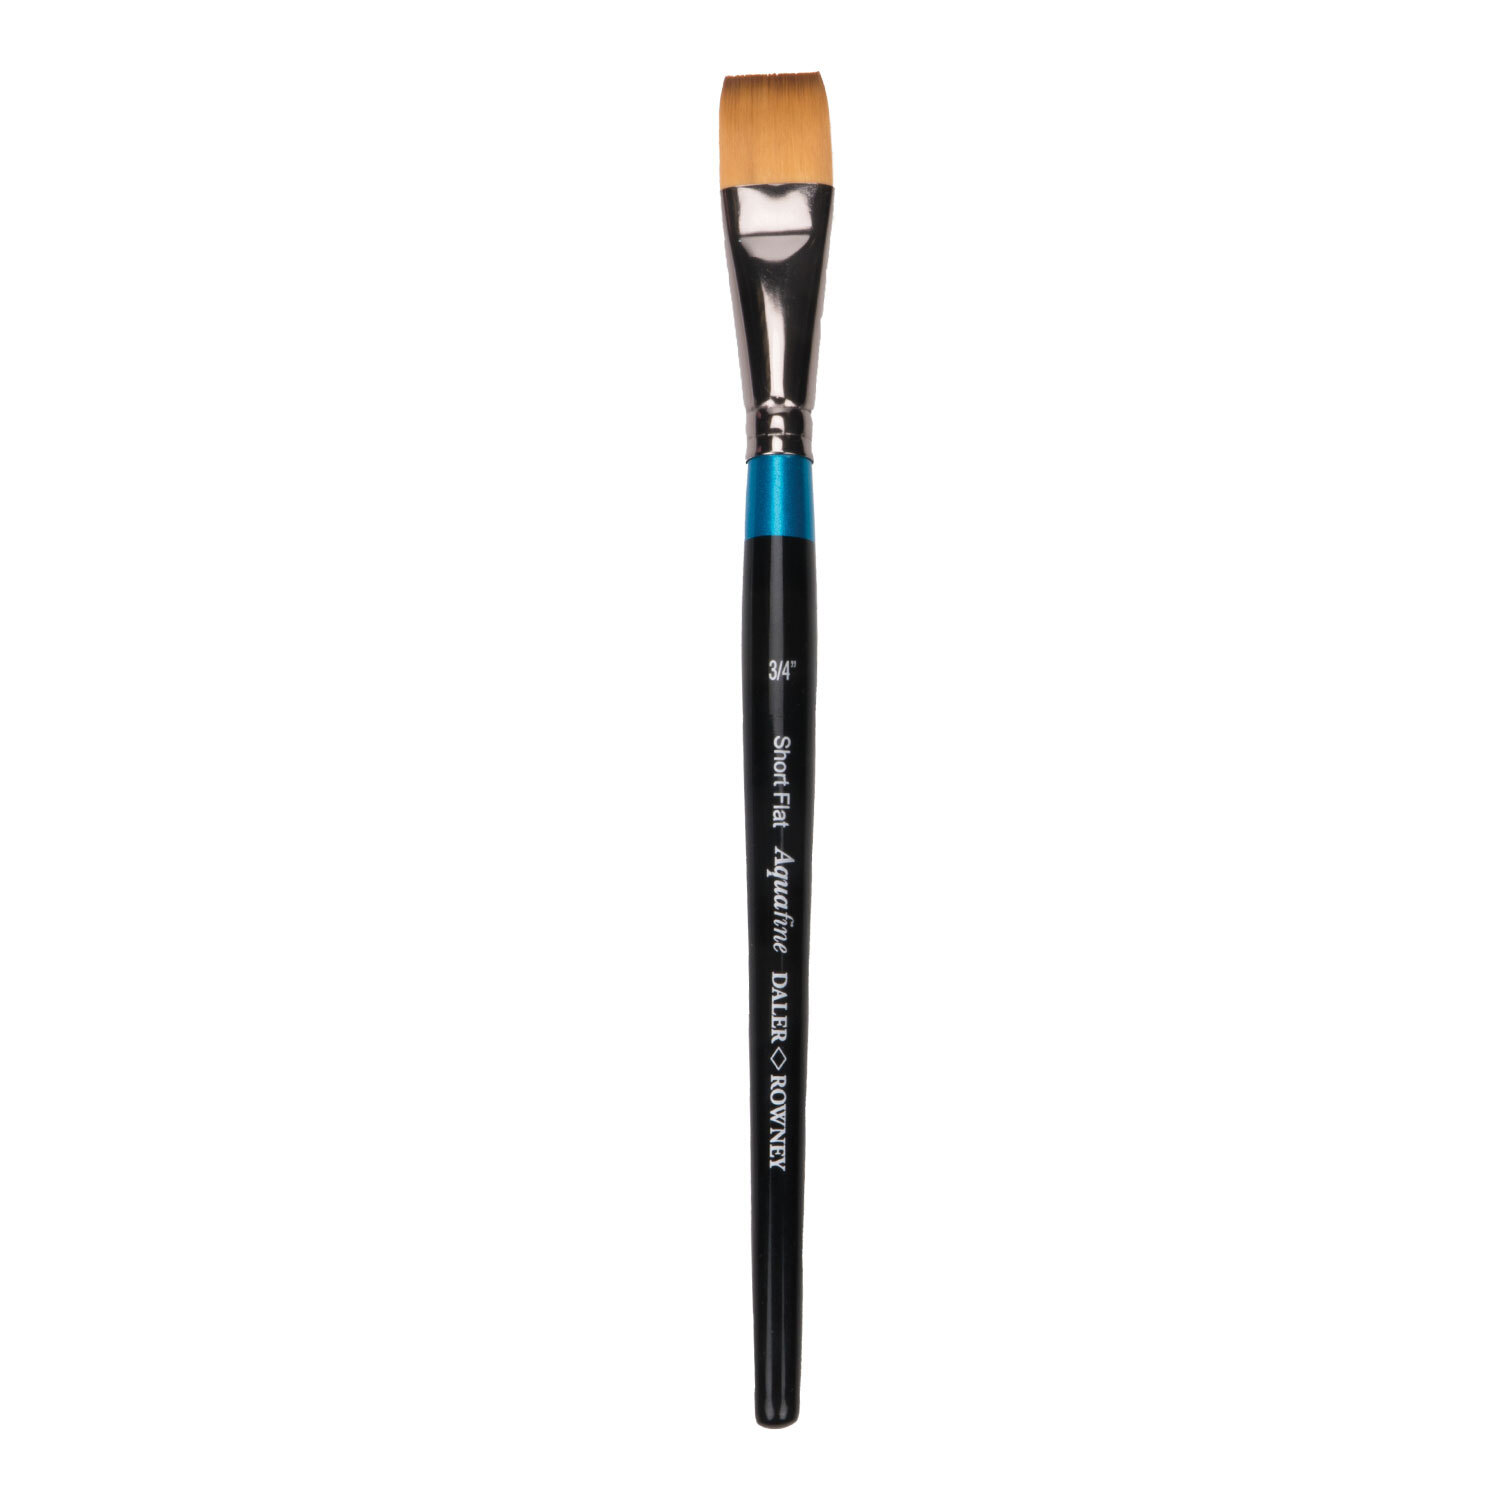 Daler-Rowney Aquafine Soft Synthetic Short Flat Paint Brush 3/4 inch Image